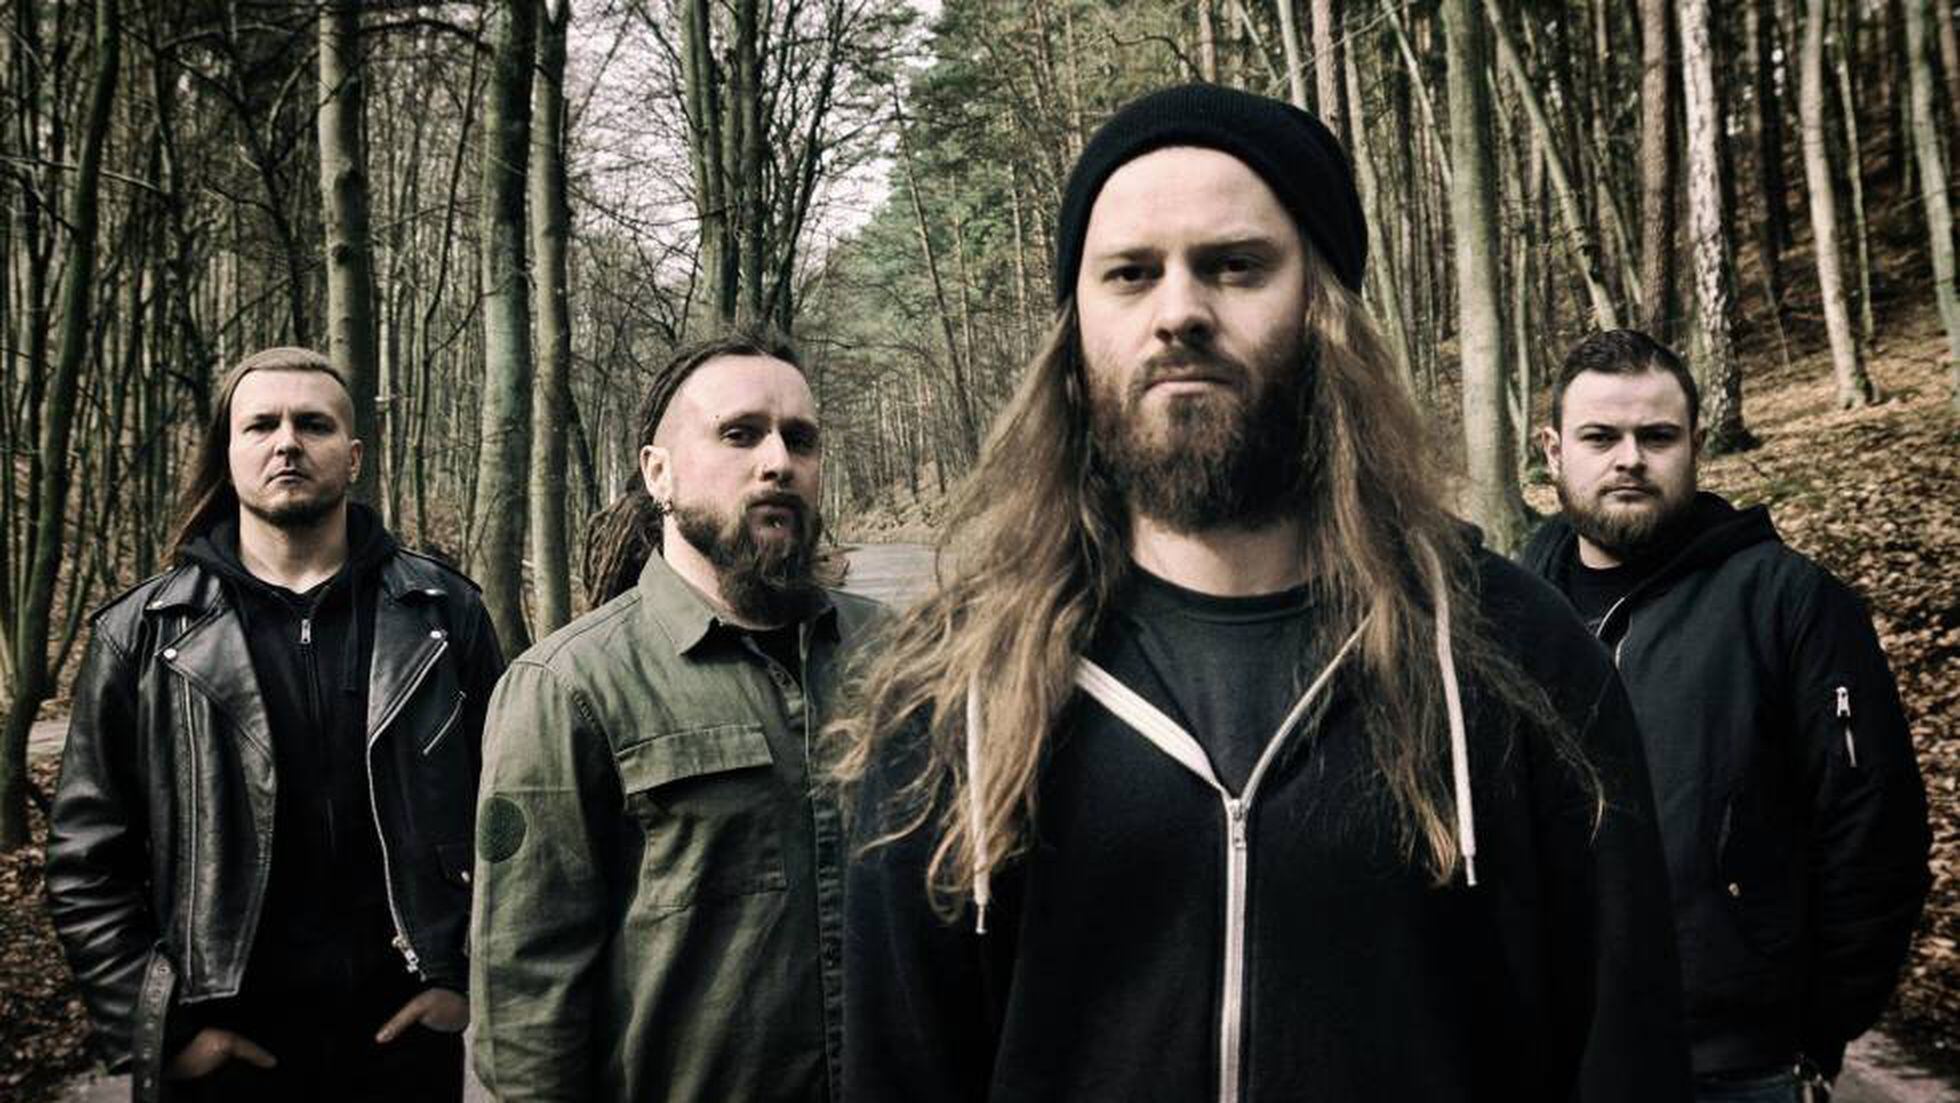 La banda de metal Decapitated cancela su gira, acusada de violación en grupo | Cultura | EL PAÍS